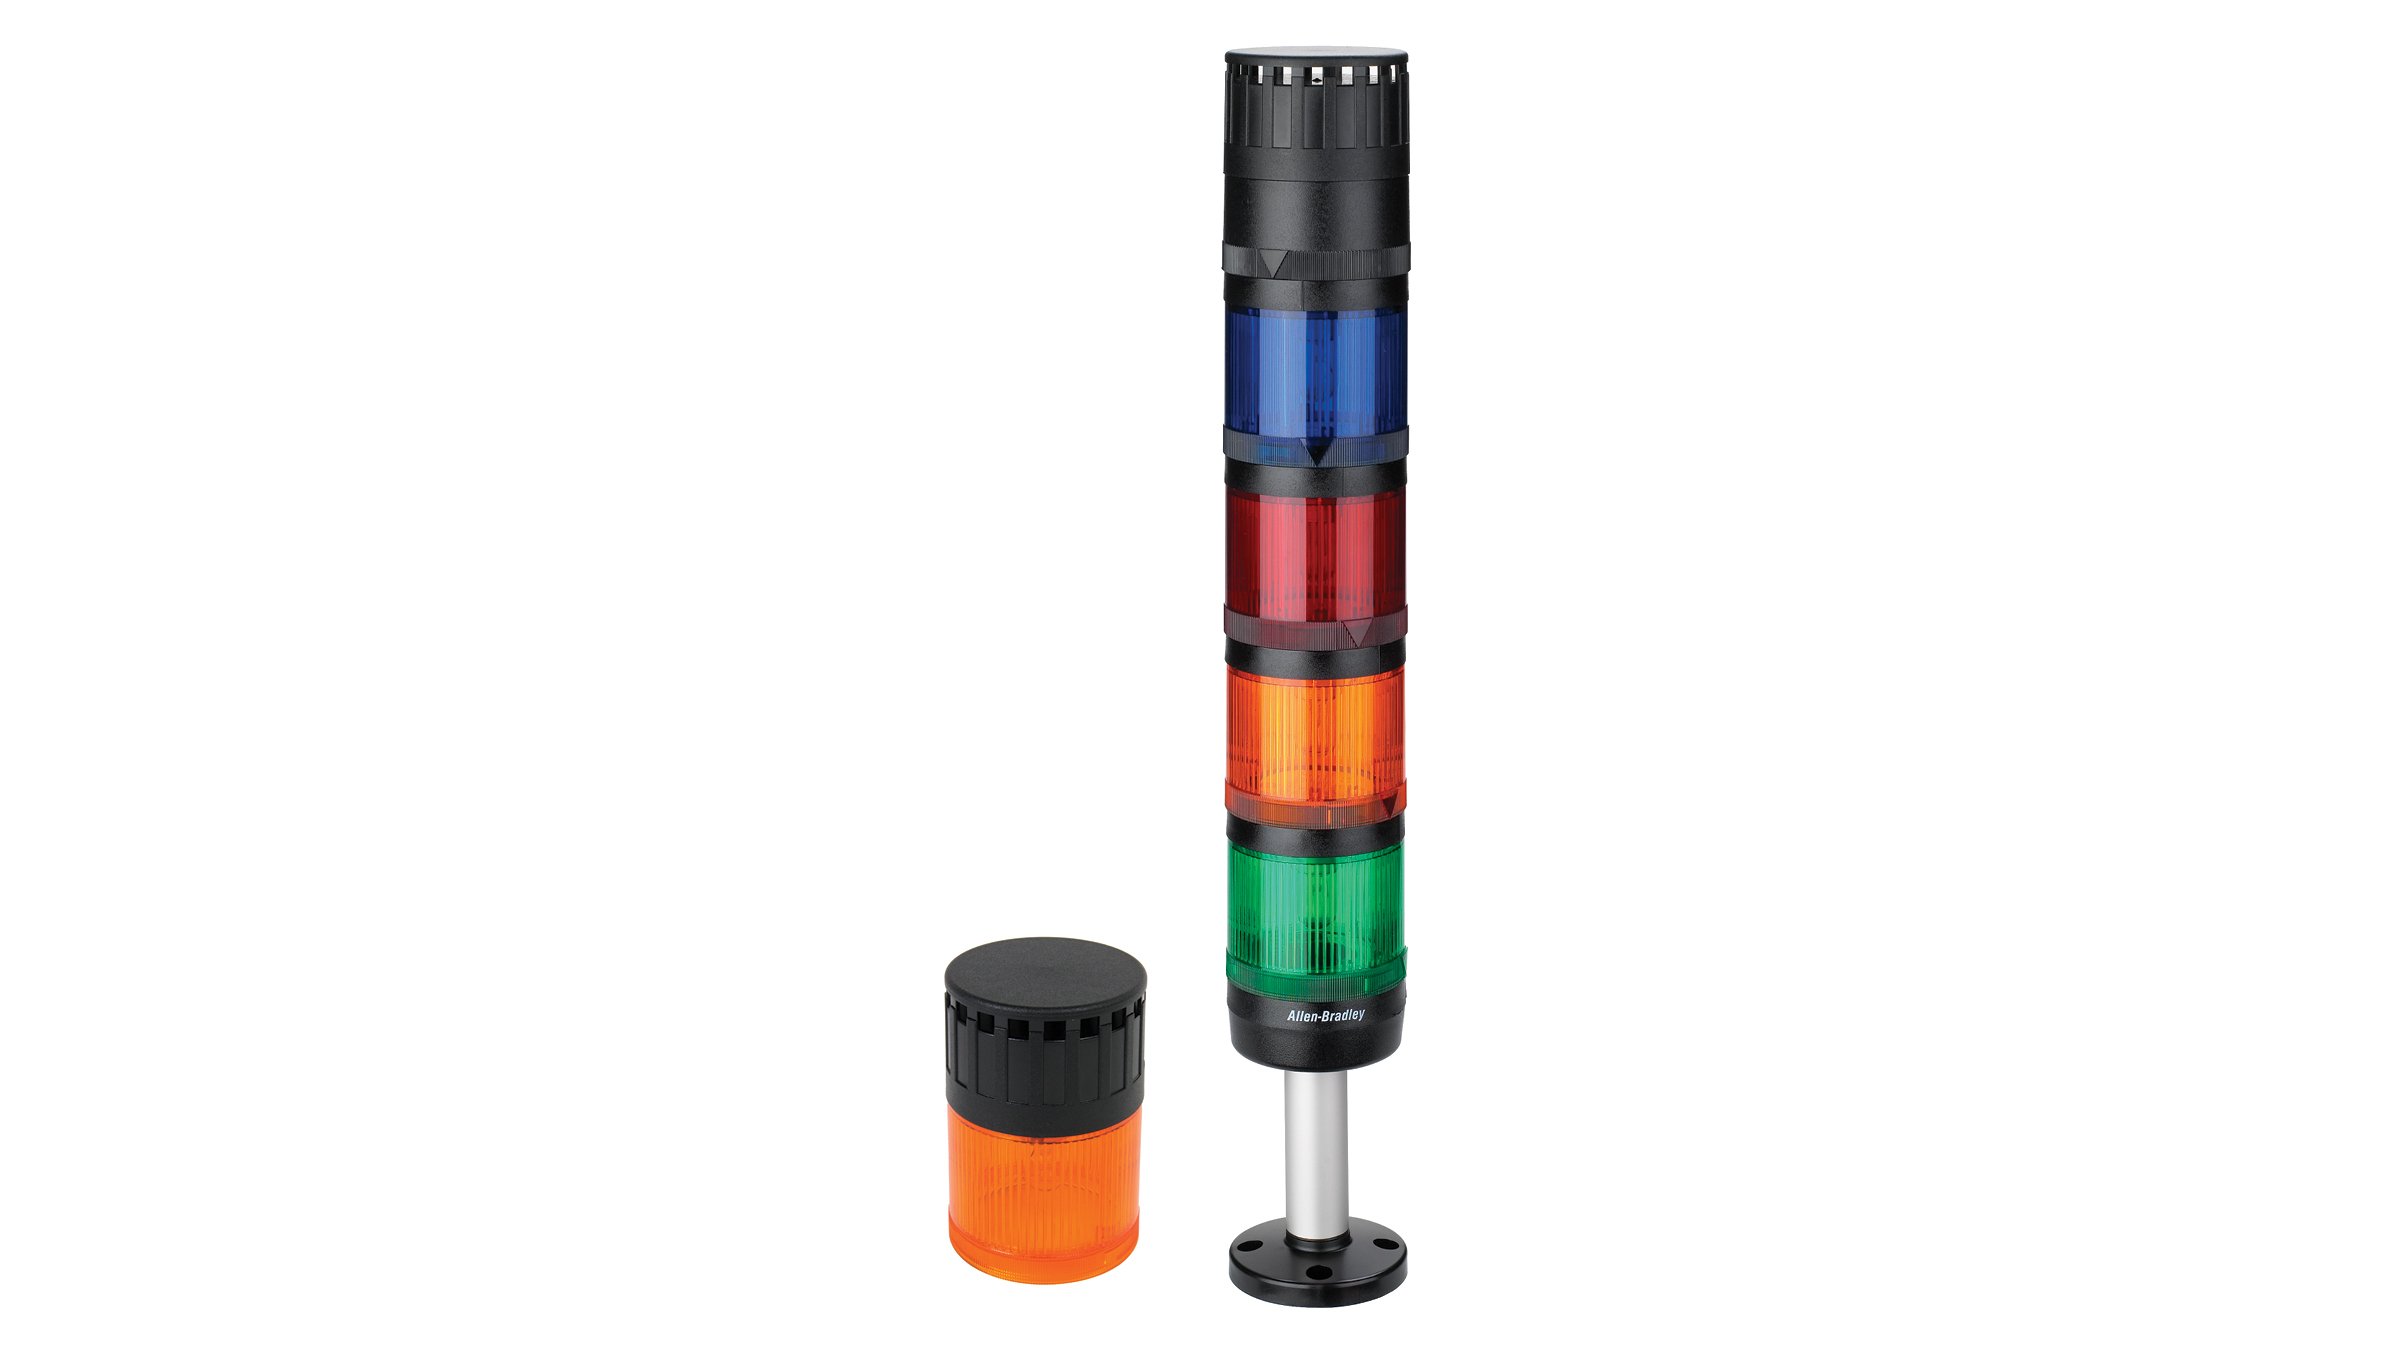 deux colonnes lumineuses control tower 855, une orange avec couvercle noir ; socle de 4 colonnes lumineuses vert, orange, rouge et bleu avec couvercle noir